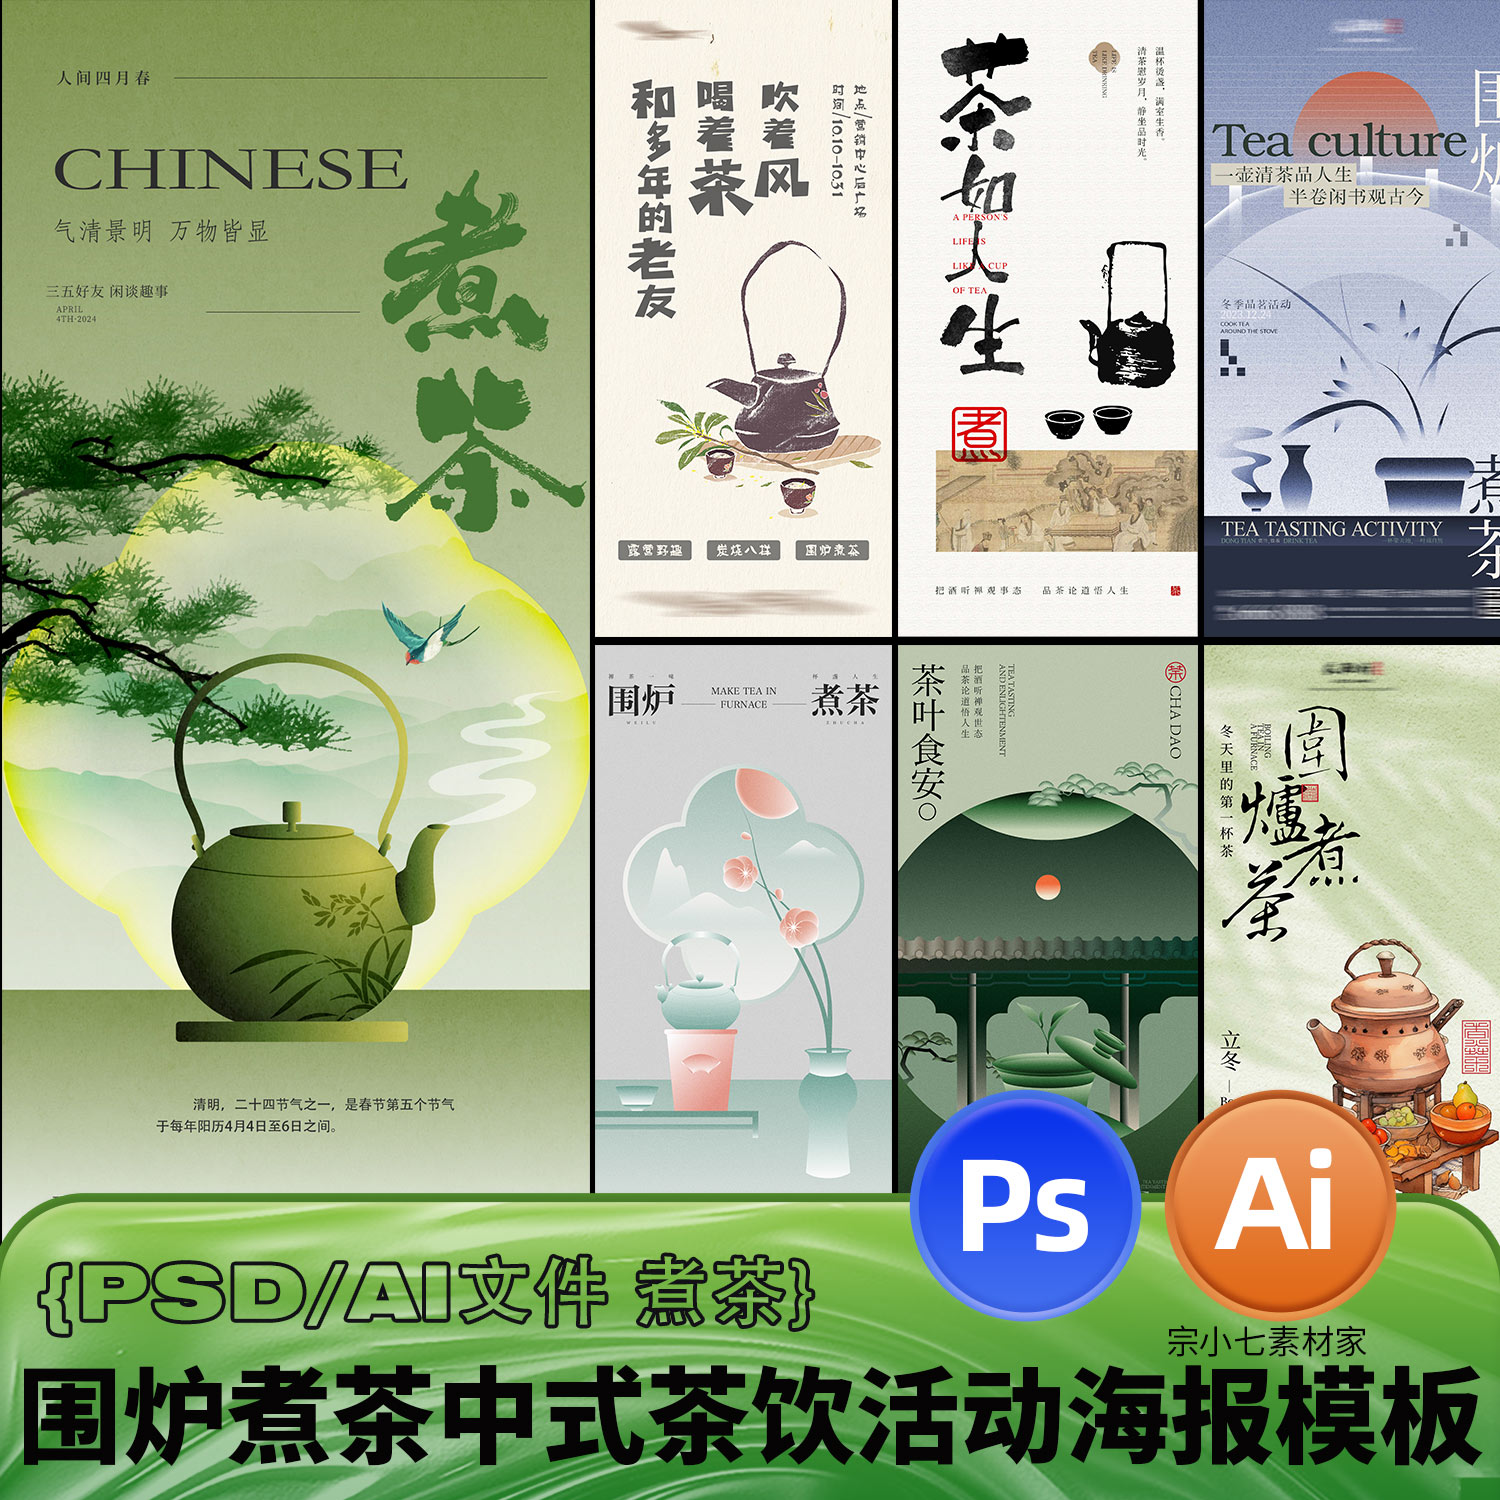 新中式围炉煮茶活动主题茶饮聚会中国风古风创意海报PSD/AI模板